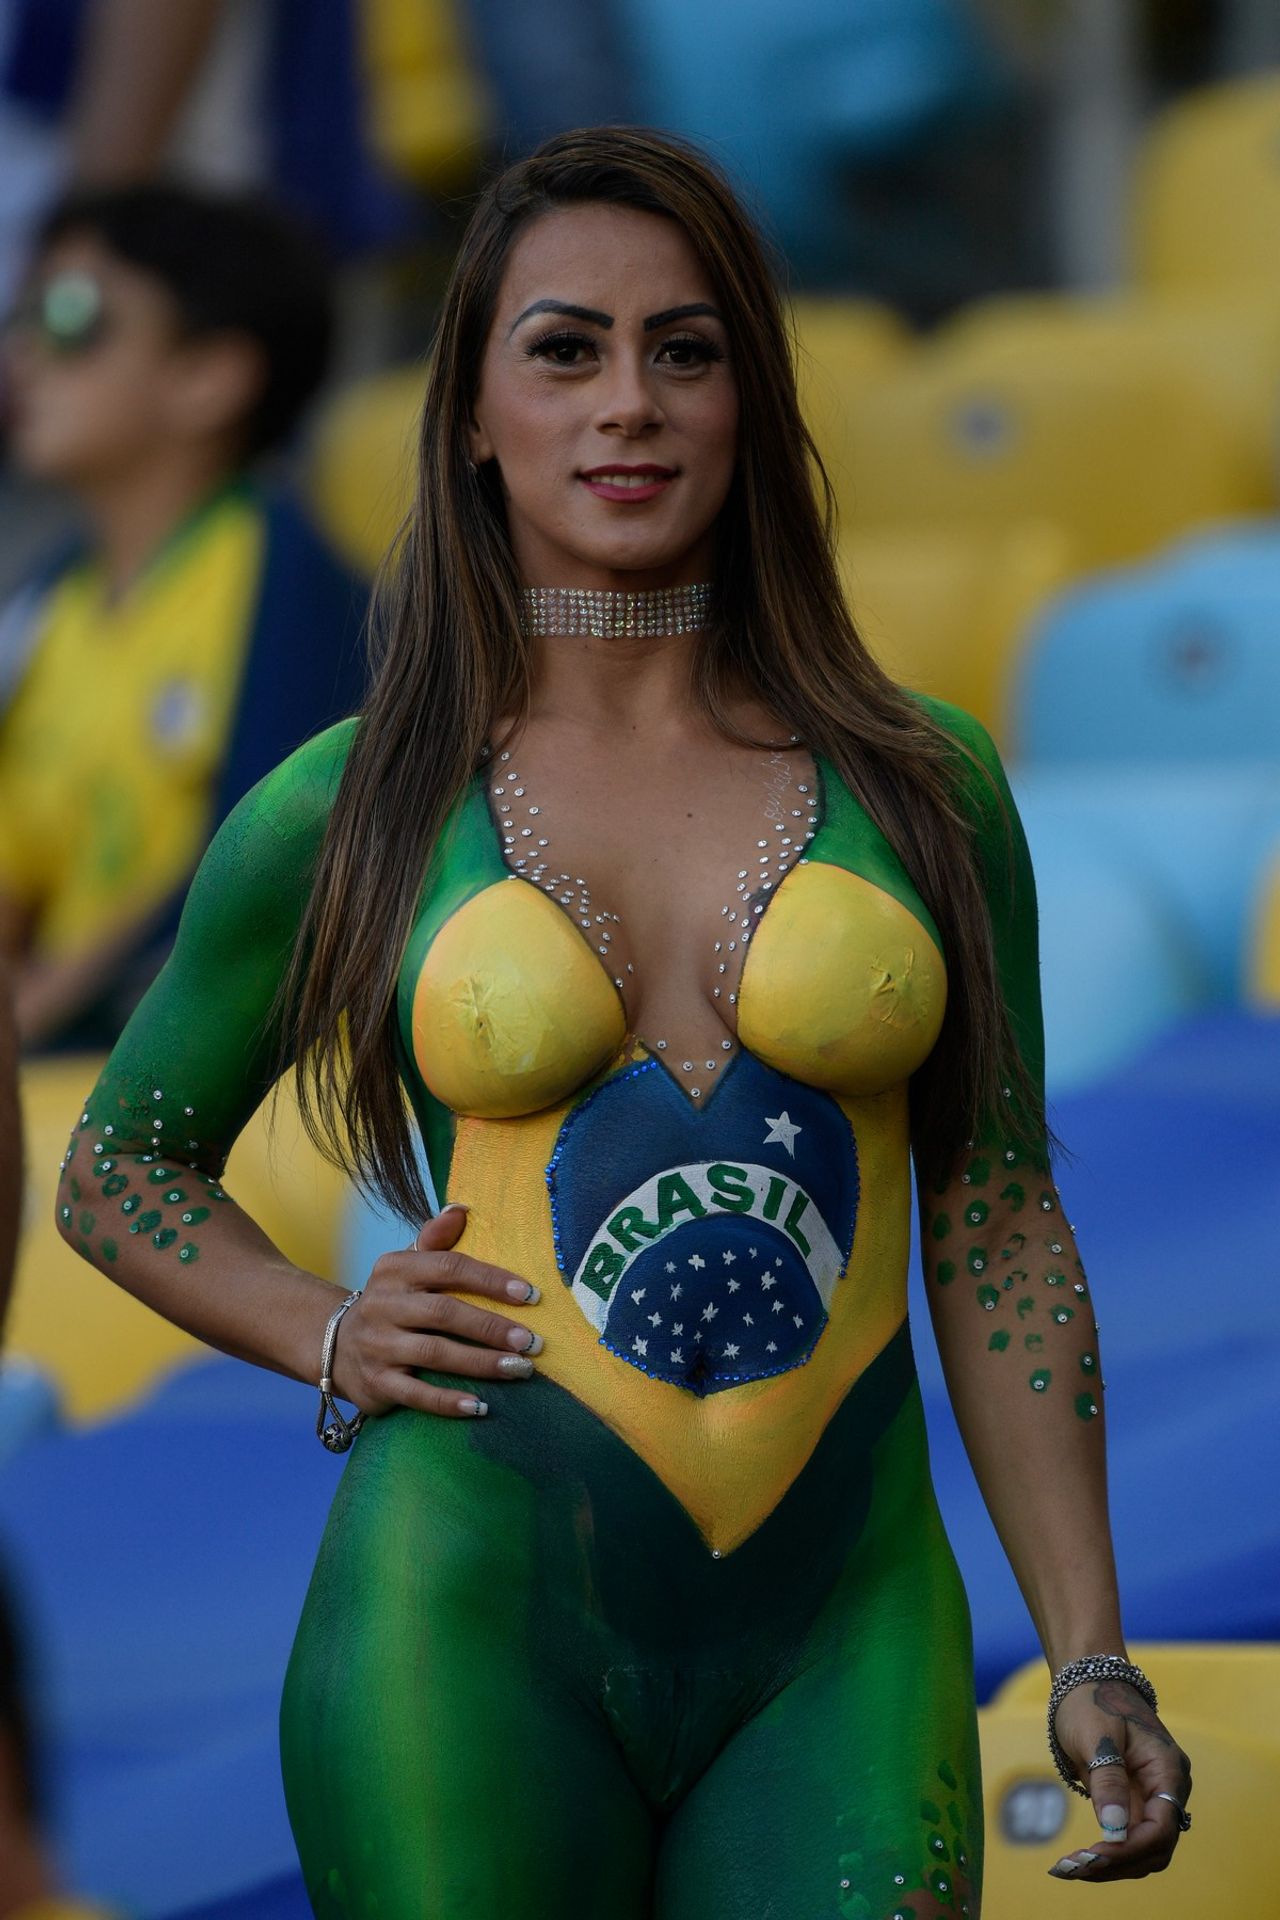 Brazilská divačka nechala týmovou šálu doma - GALERIE: Fotbalové divačky, které často ukázaly vše (5/12)